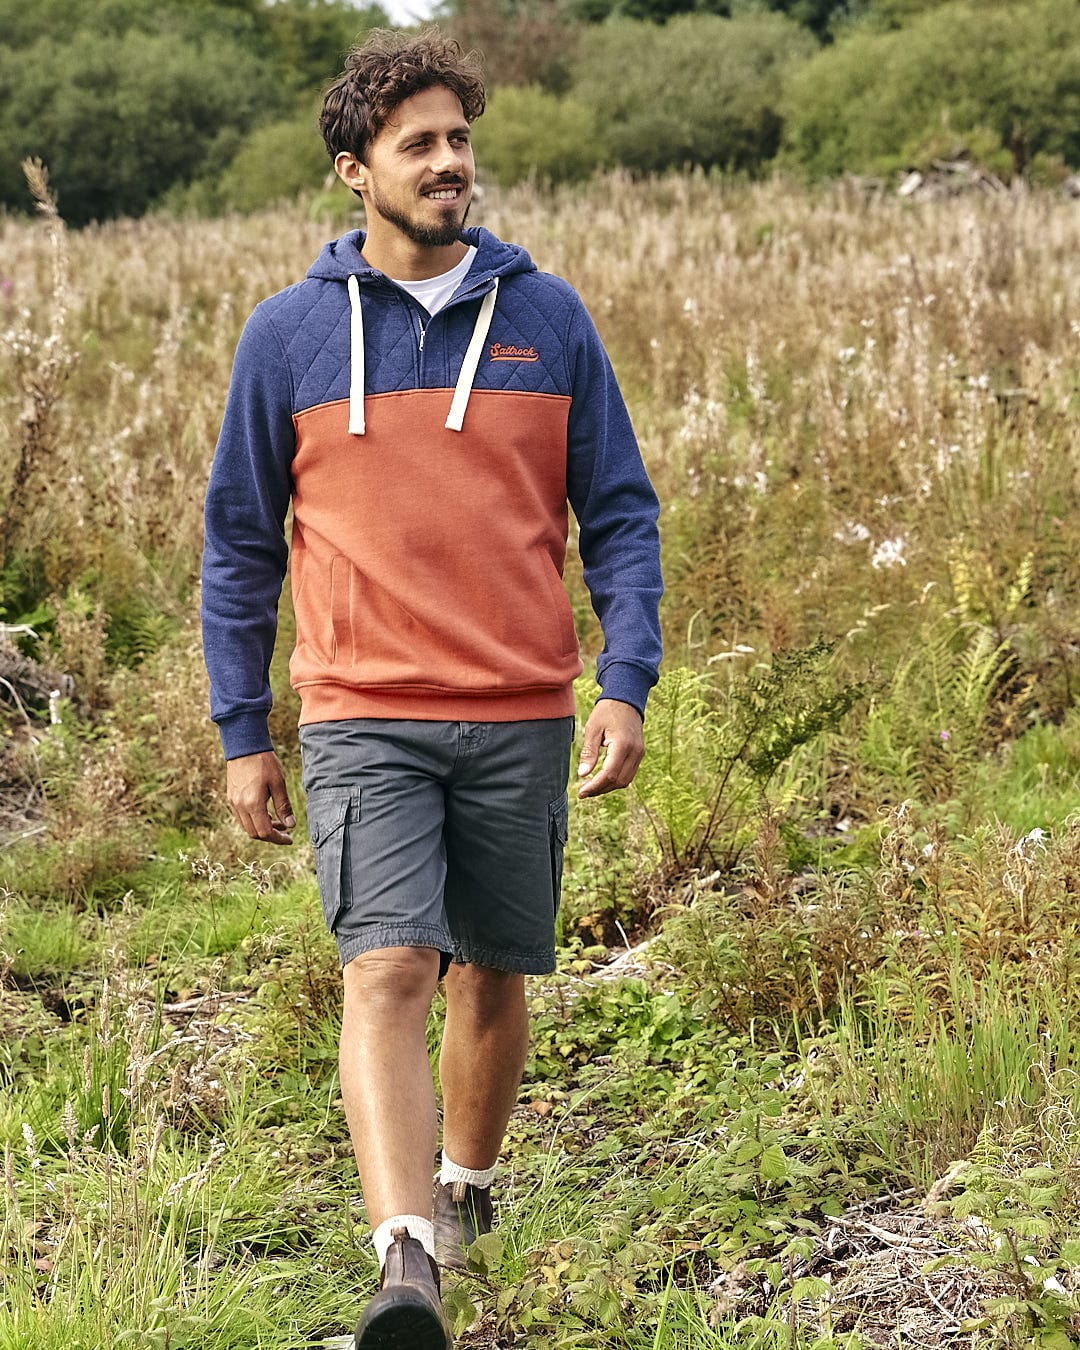 A man walking through a field wearing a Saltrock - Aiken - Mens 1/4 Neck Hoodie - Orange and shorts.